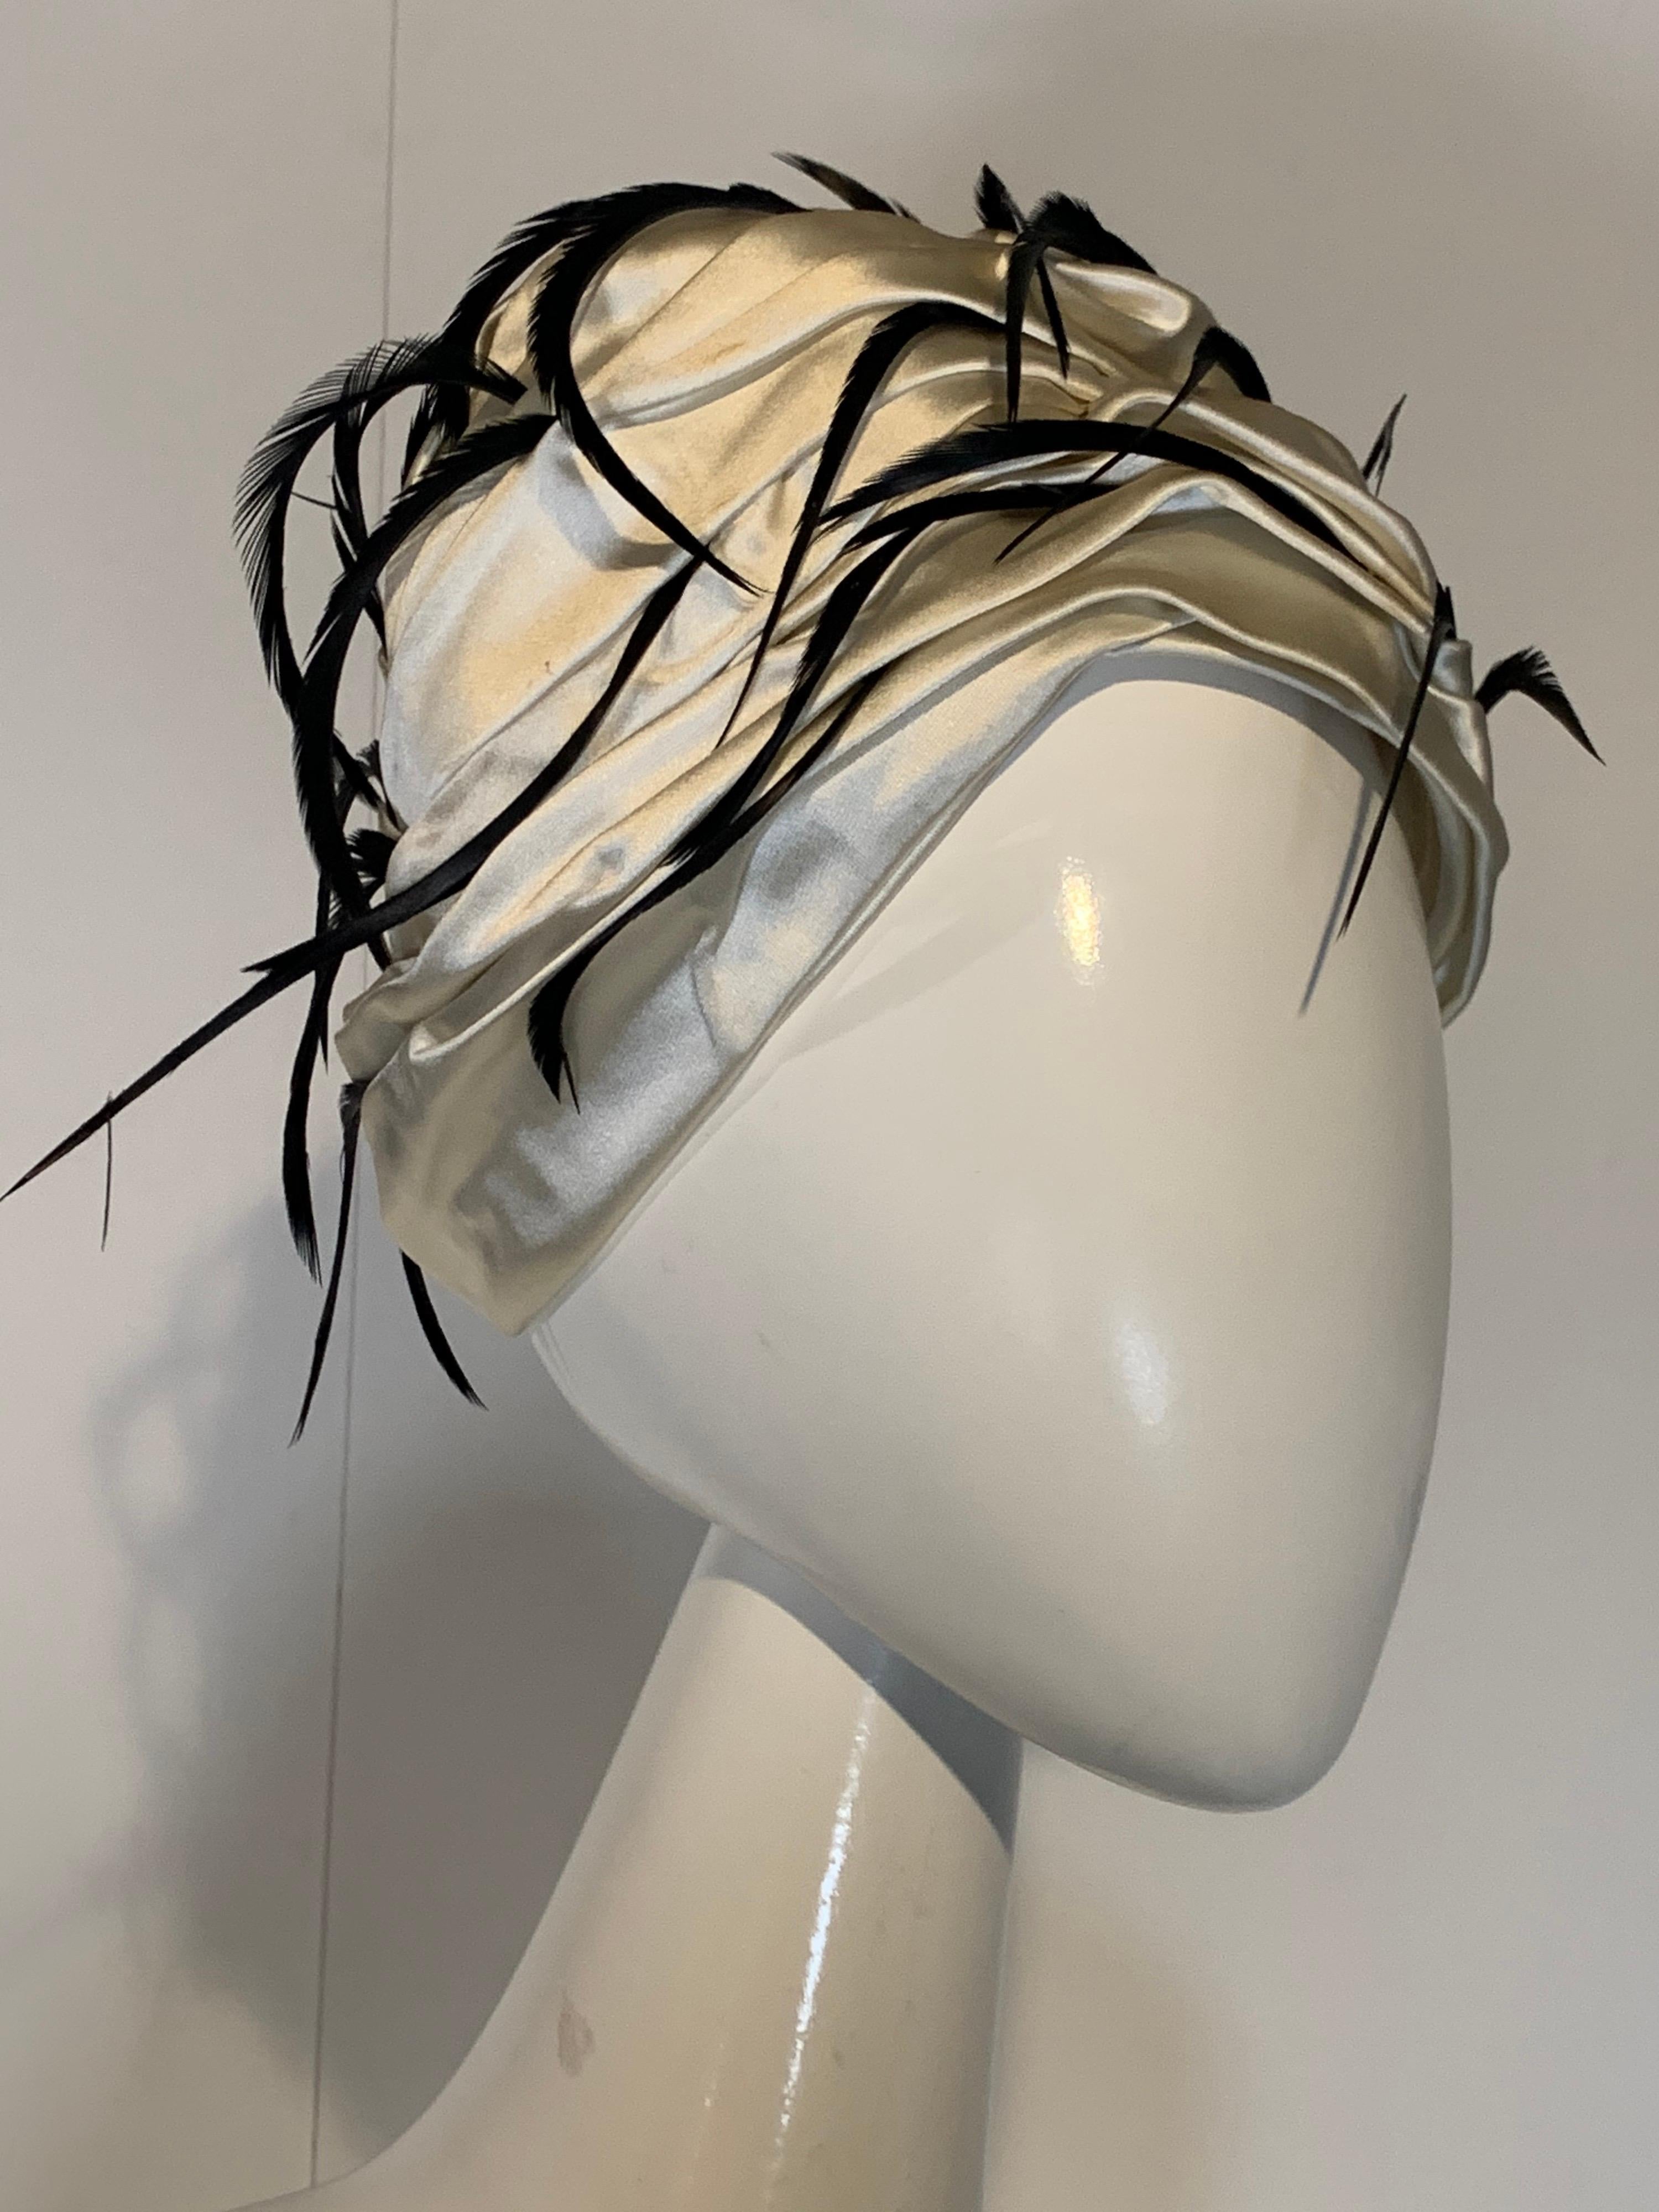 Eine atemberaubende 1960er Christian Dior by Marc Bohan Eierschalen-Satin plissiert Turban Hut mit knackigen schwarzen coq Federn flattern von den Falten!  Eine schöne und fesselnde Bewegung!  Größe Medium 